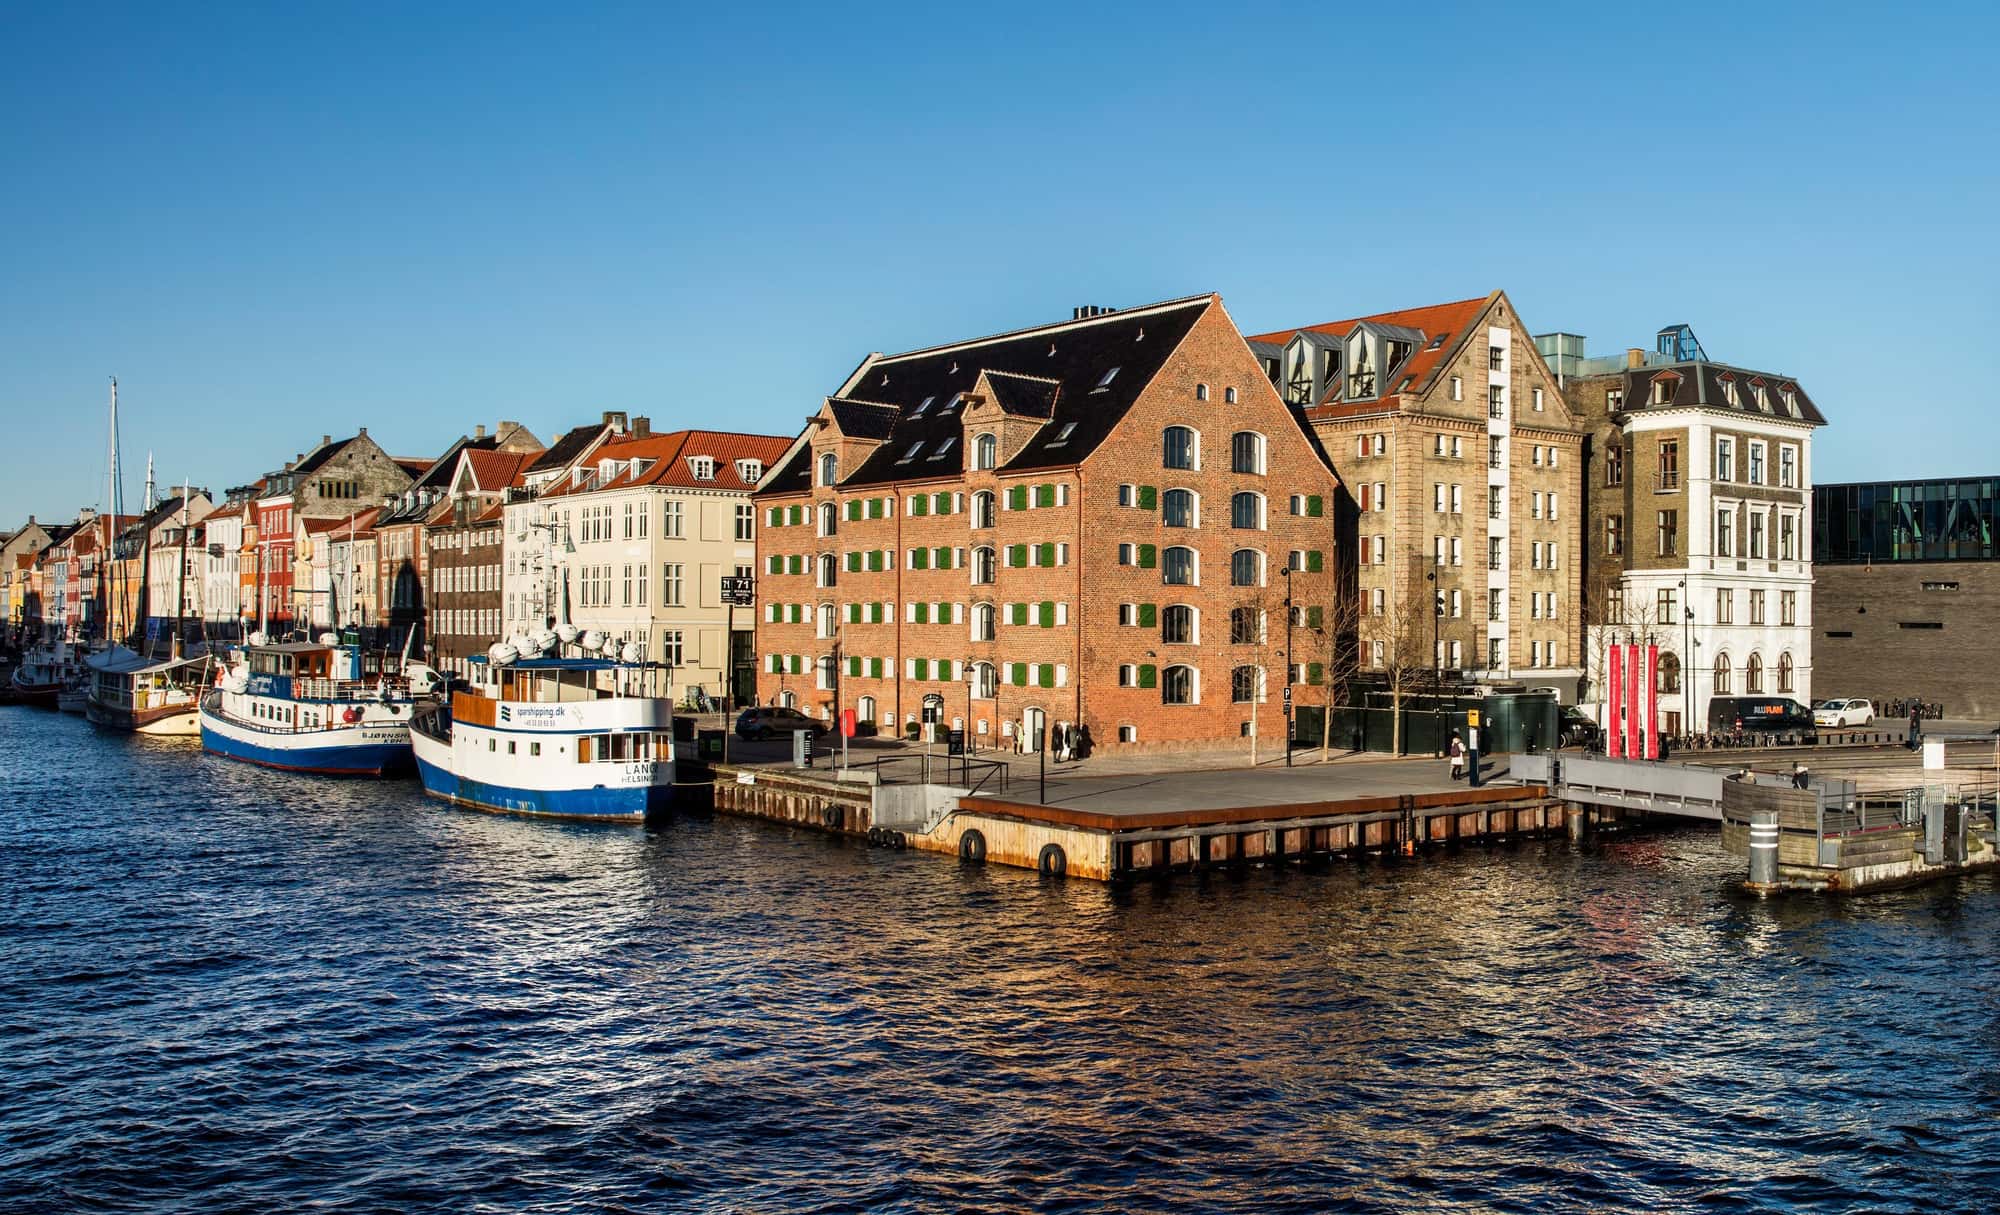 Review of Nyhavn Harbor in Copenhagen